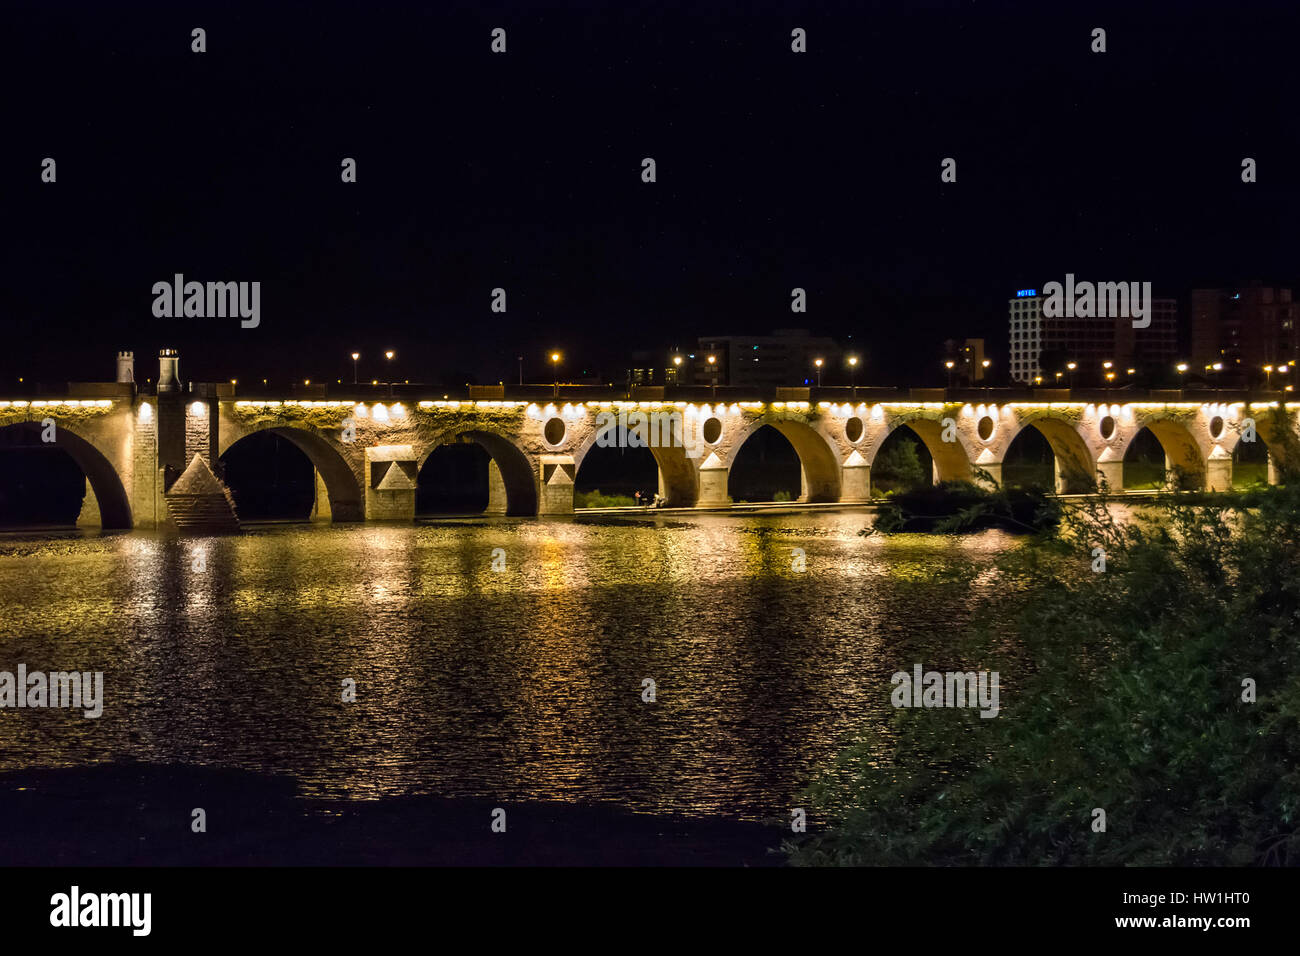 Puente de palmas por la noche (Puente de Palmas, Badajoz), España Foto de stock